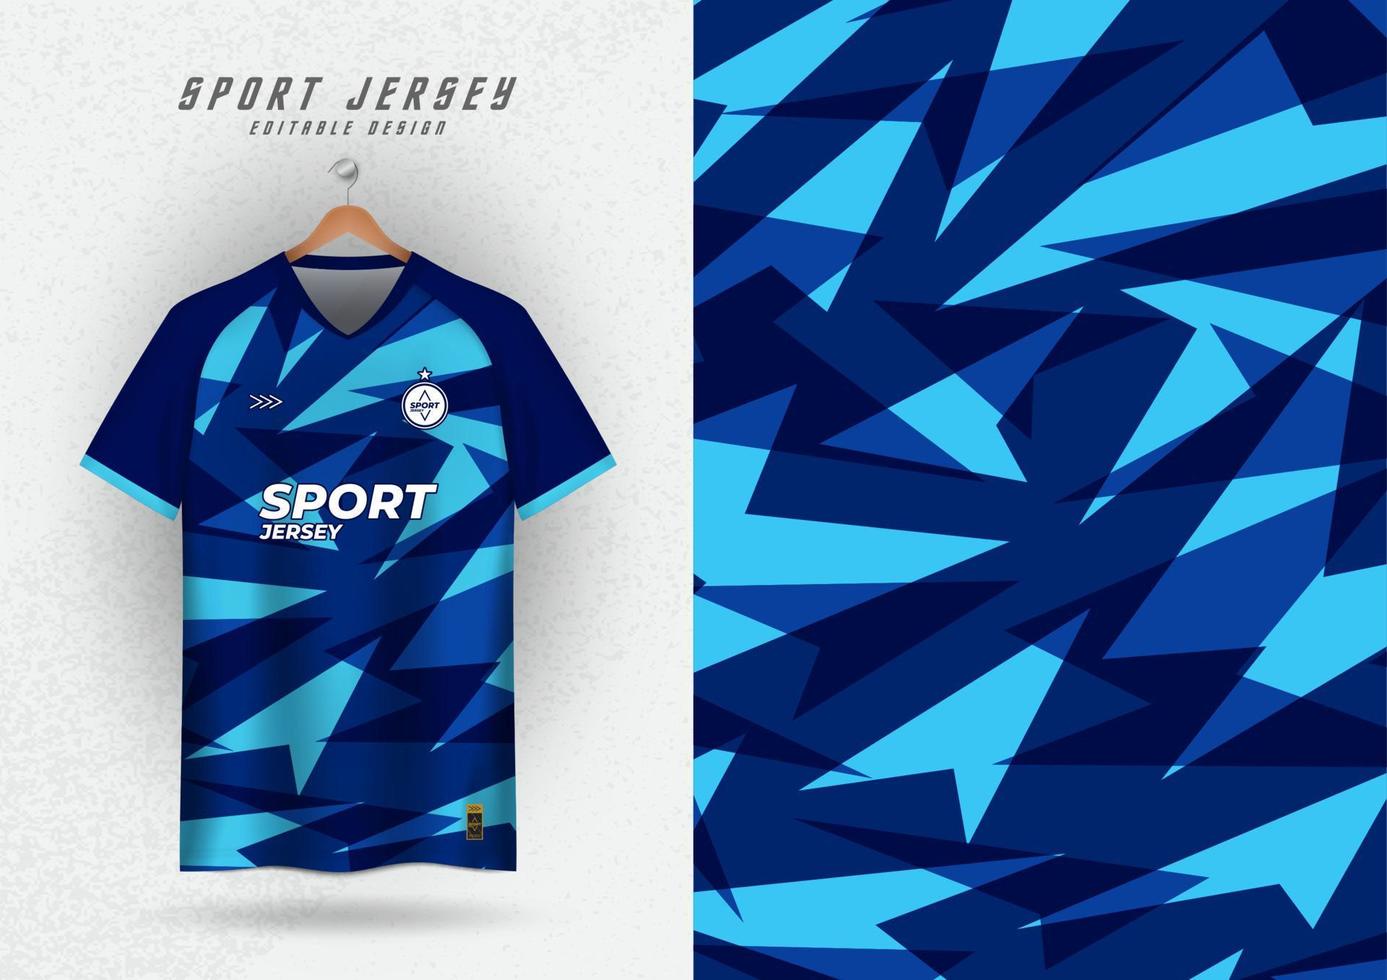 achtergrond voor sport- Jersey voetbal Jersey rennen Jersey racing Jersey driehoek patroon blauw vector